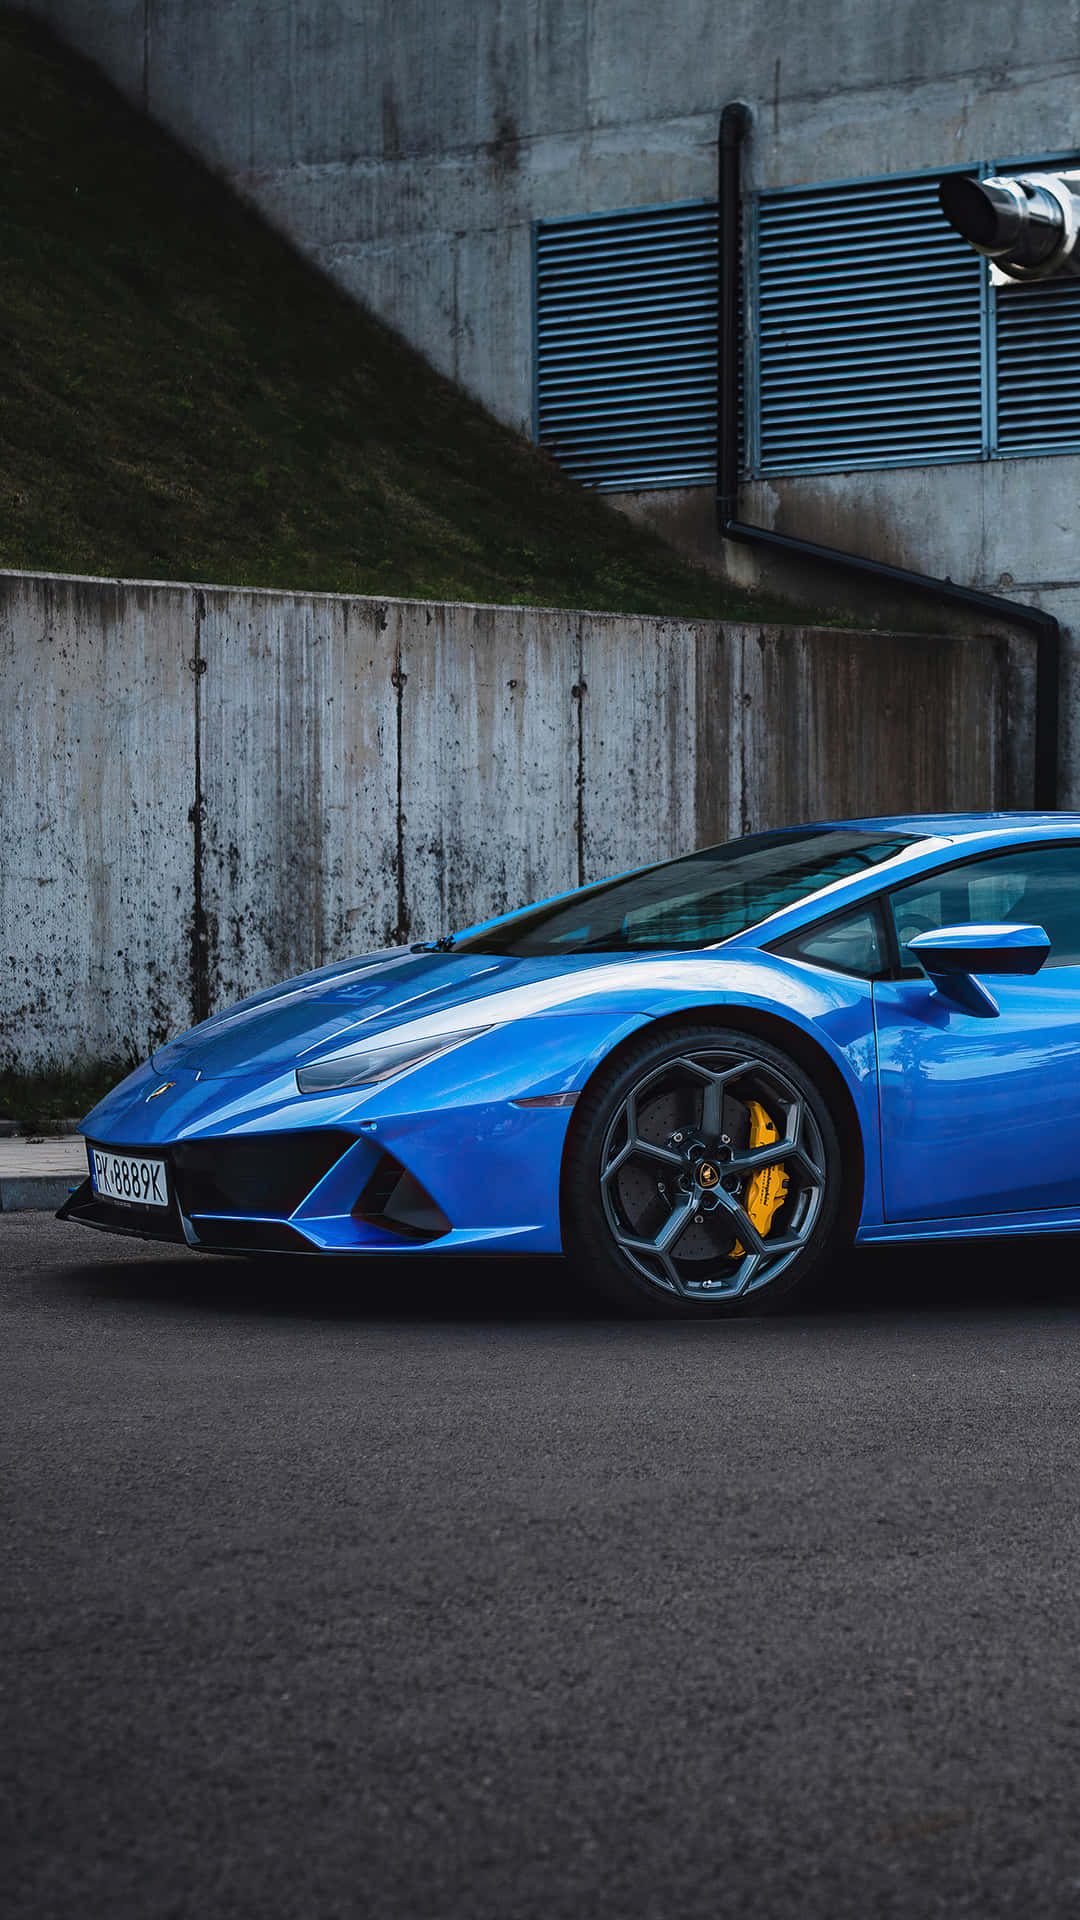 Nyd turen af luksus i en blå Lamborghini. Wallpaper